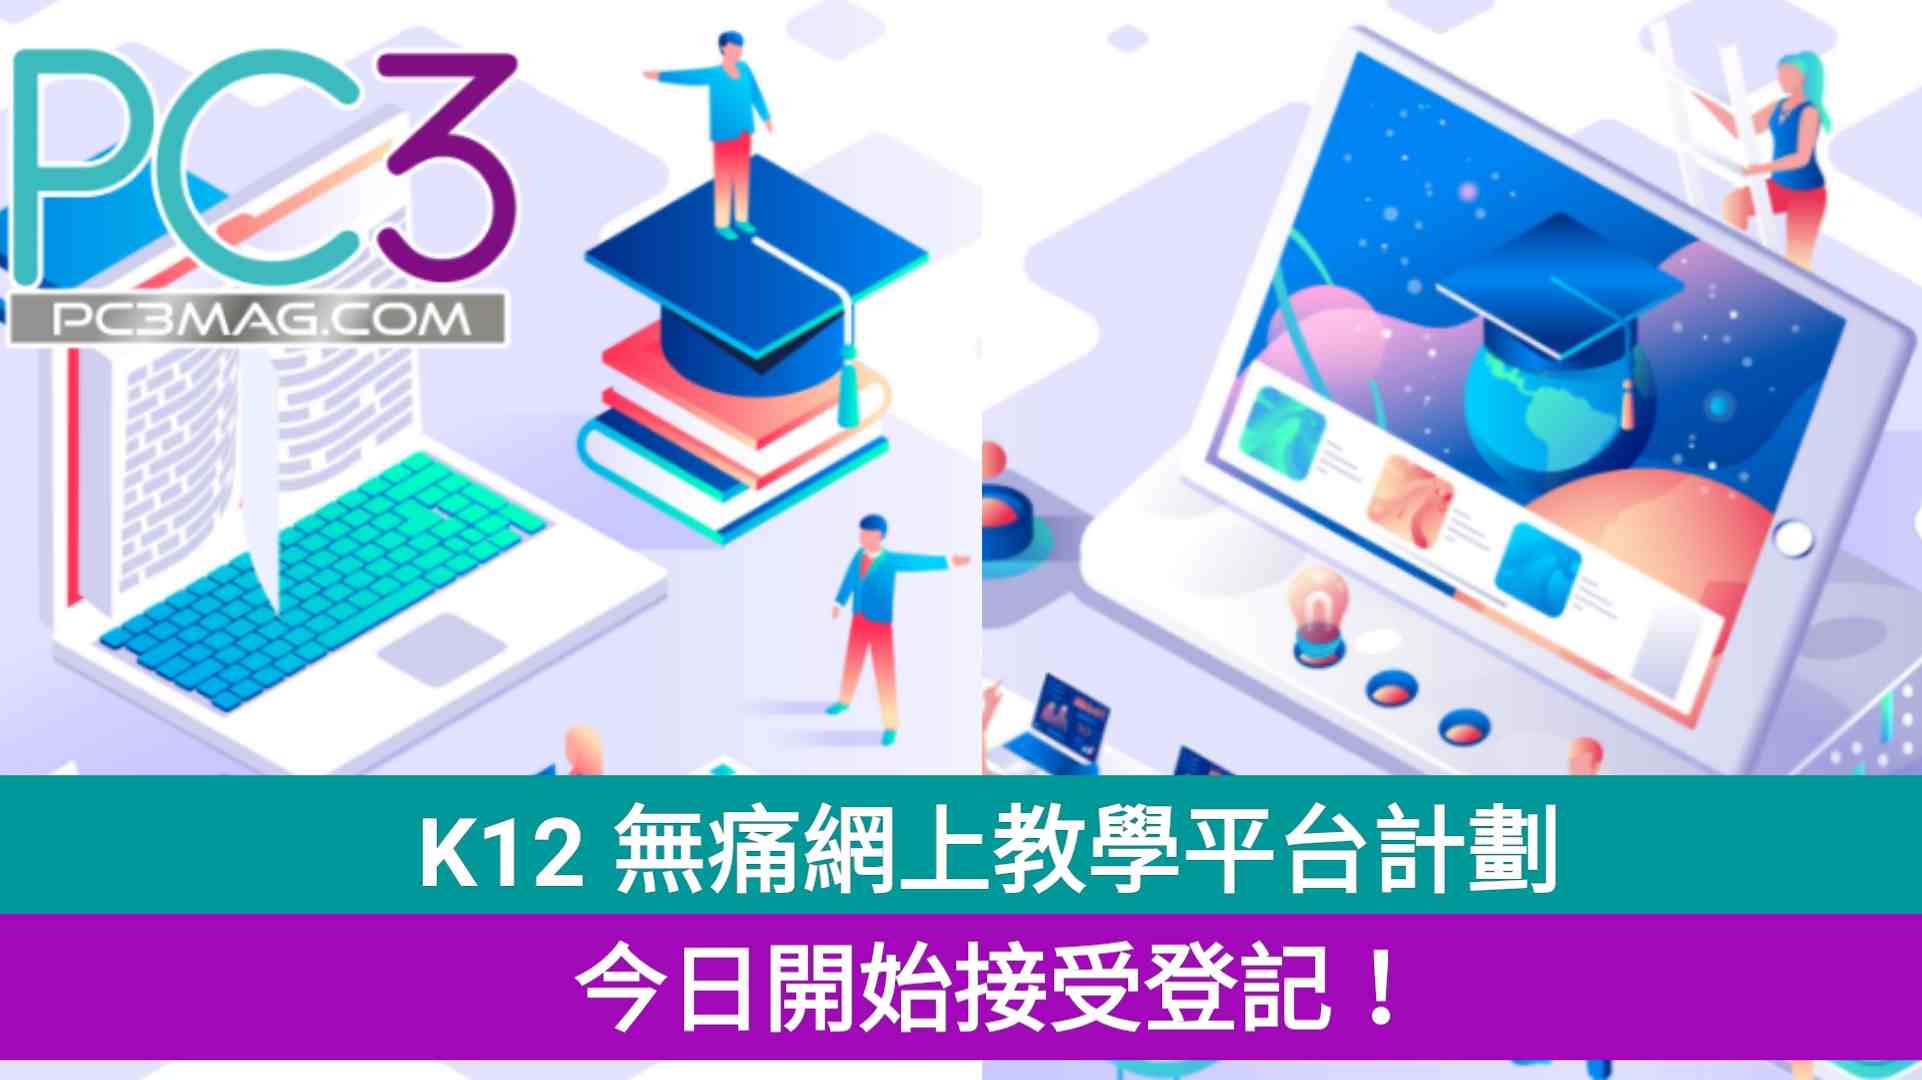 K12 無痛網上教學平台計劃 今日開始接受登記